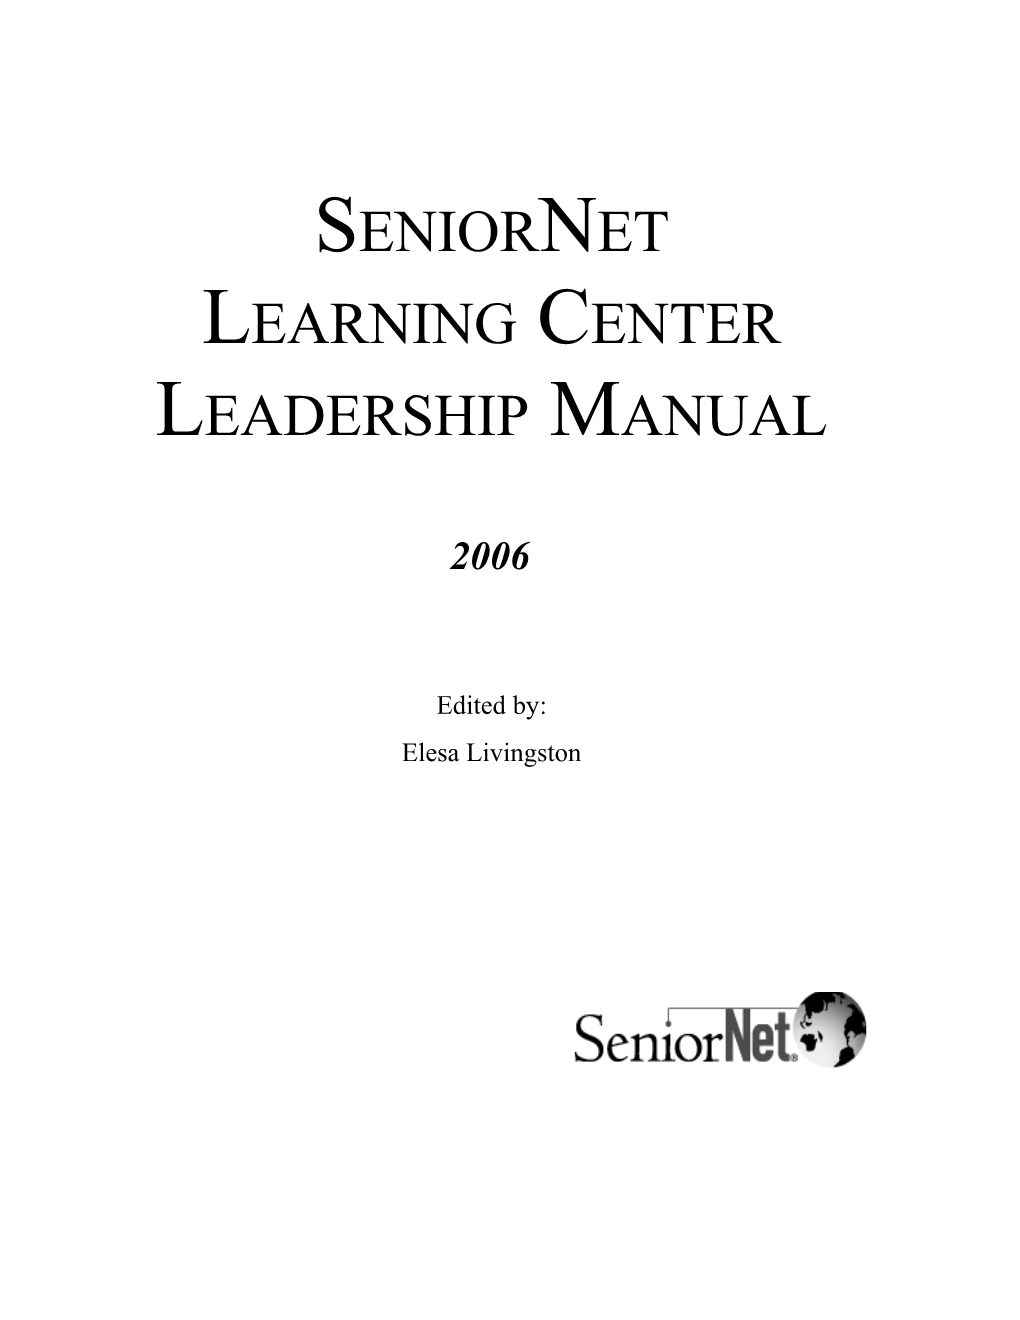 Seniornet Learning Center Leadership Manual